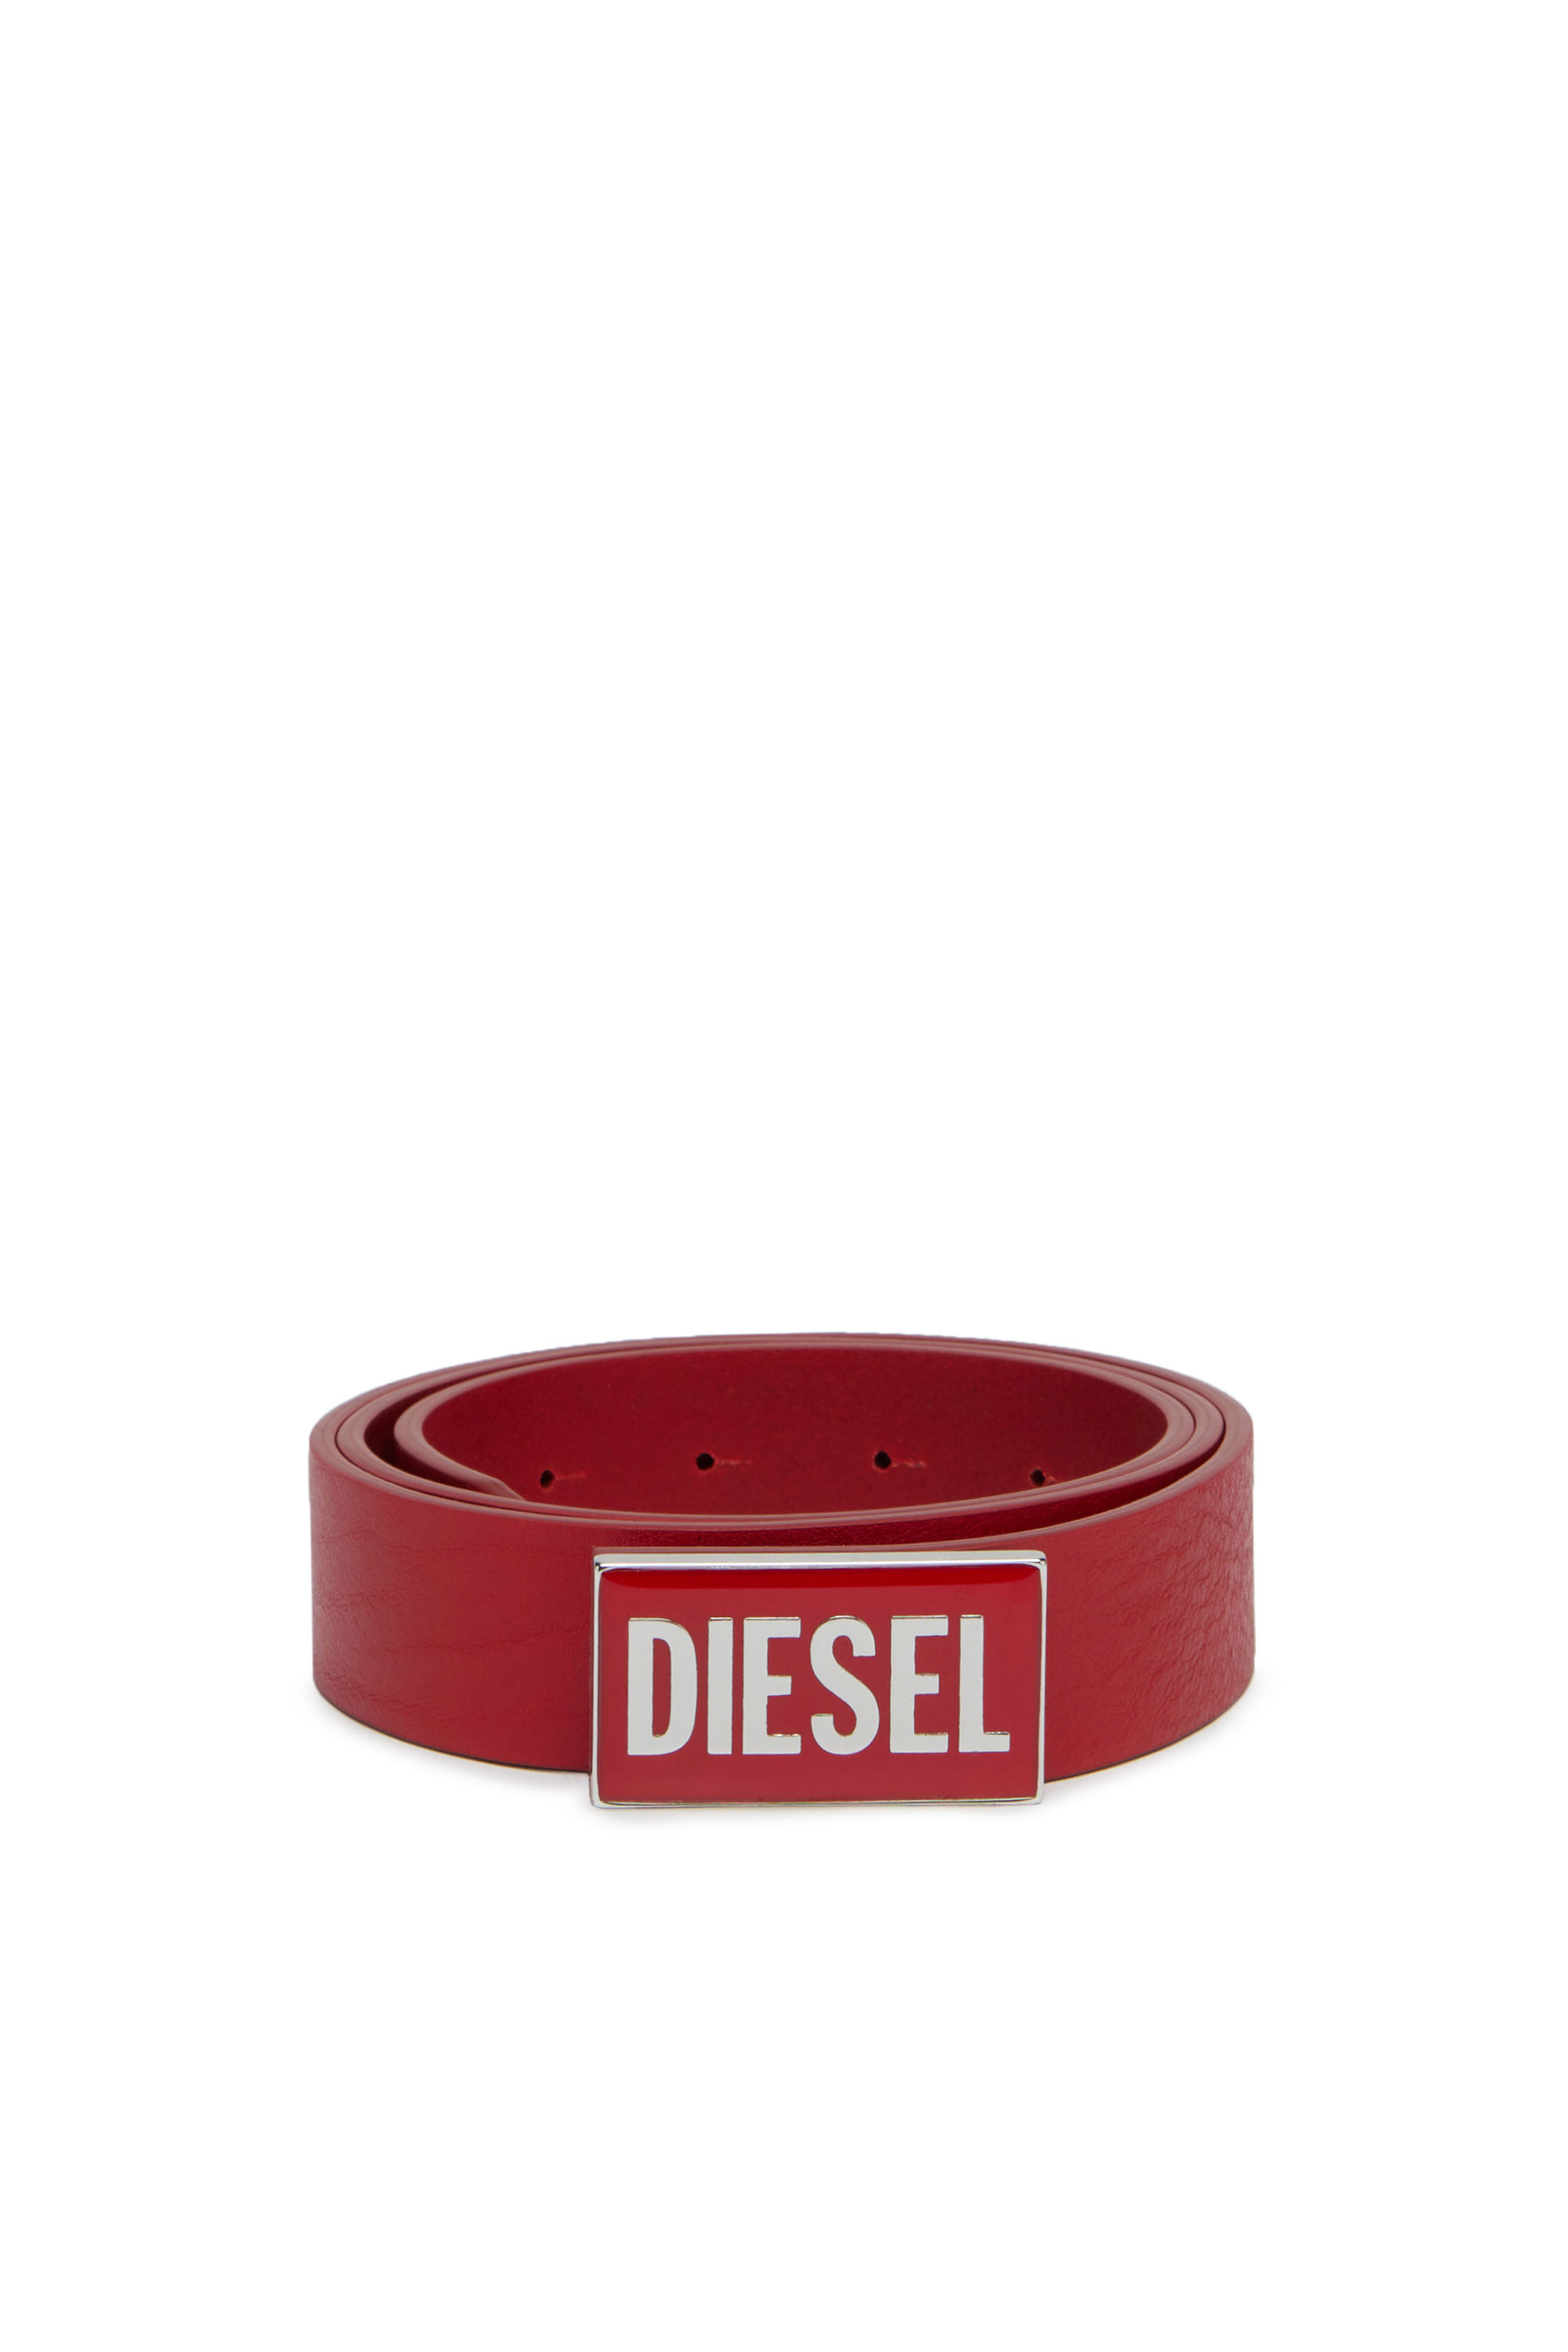 Diesel - B-GLOSSY, Rojo - Image 1